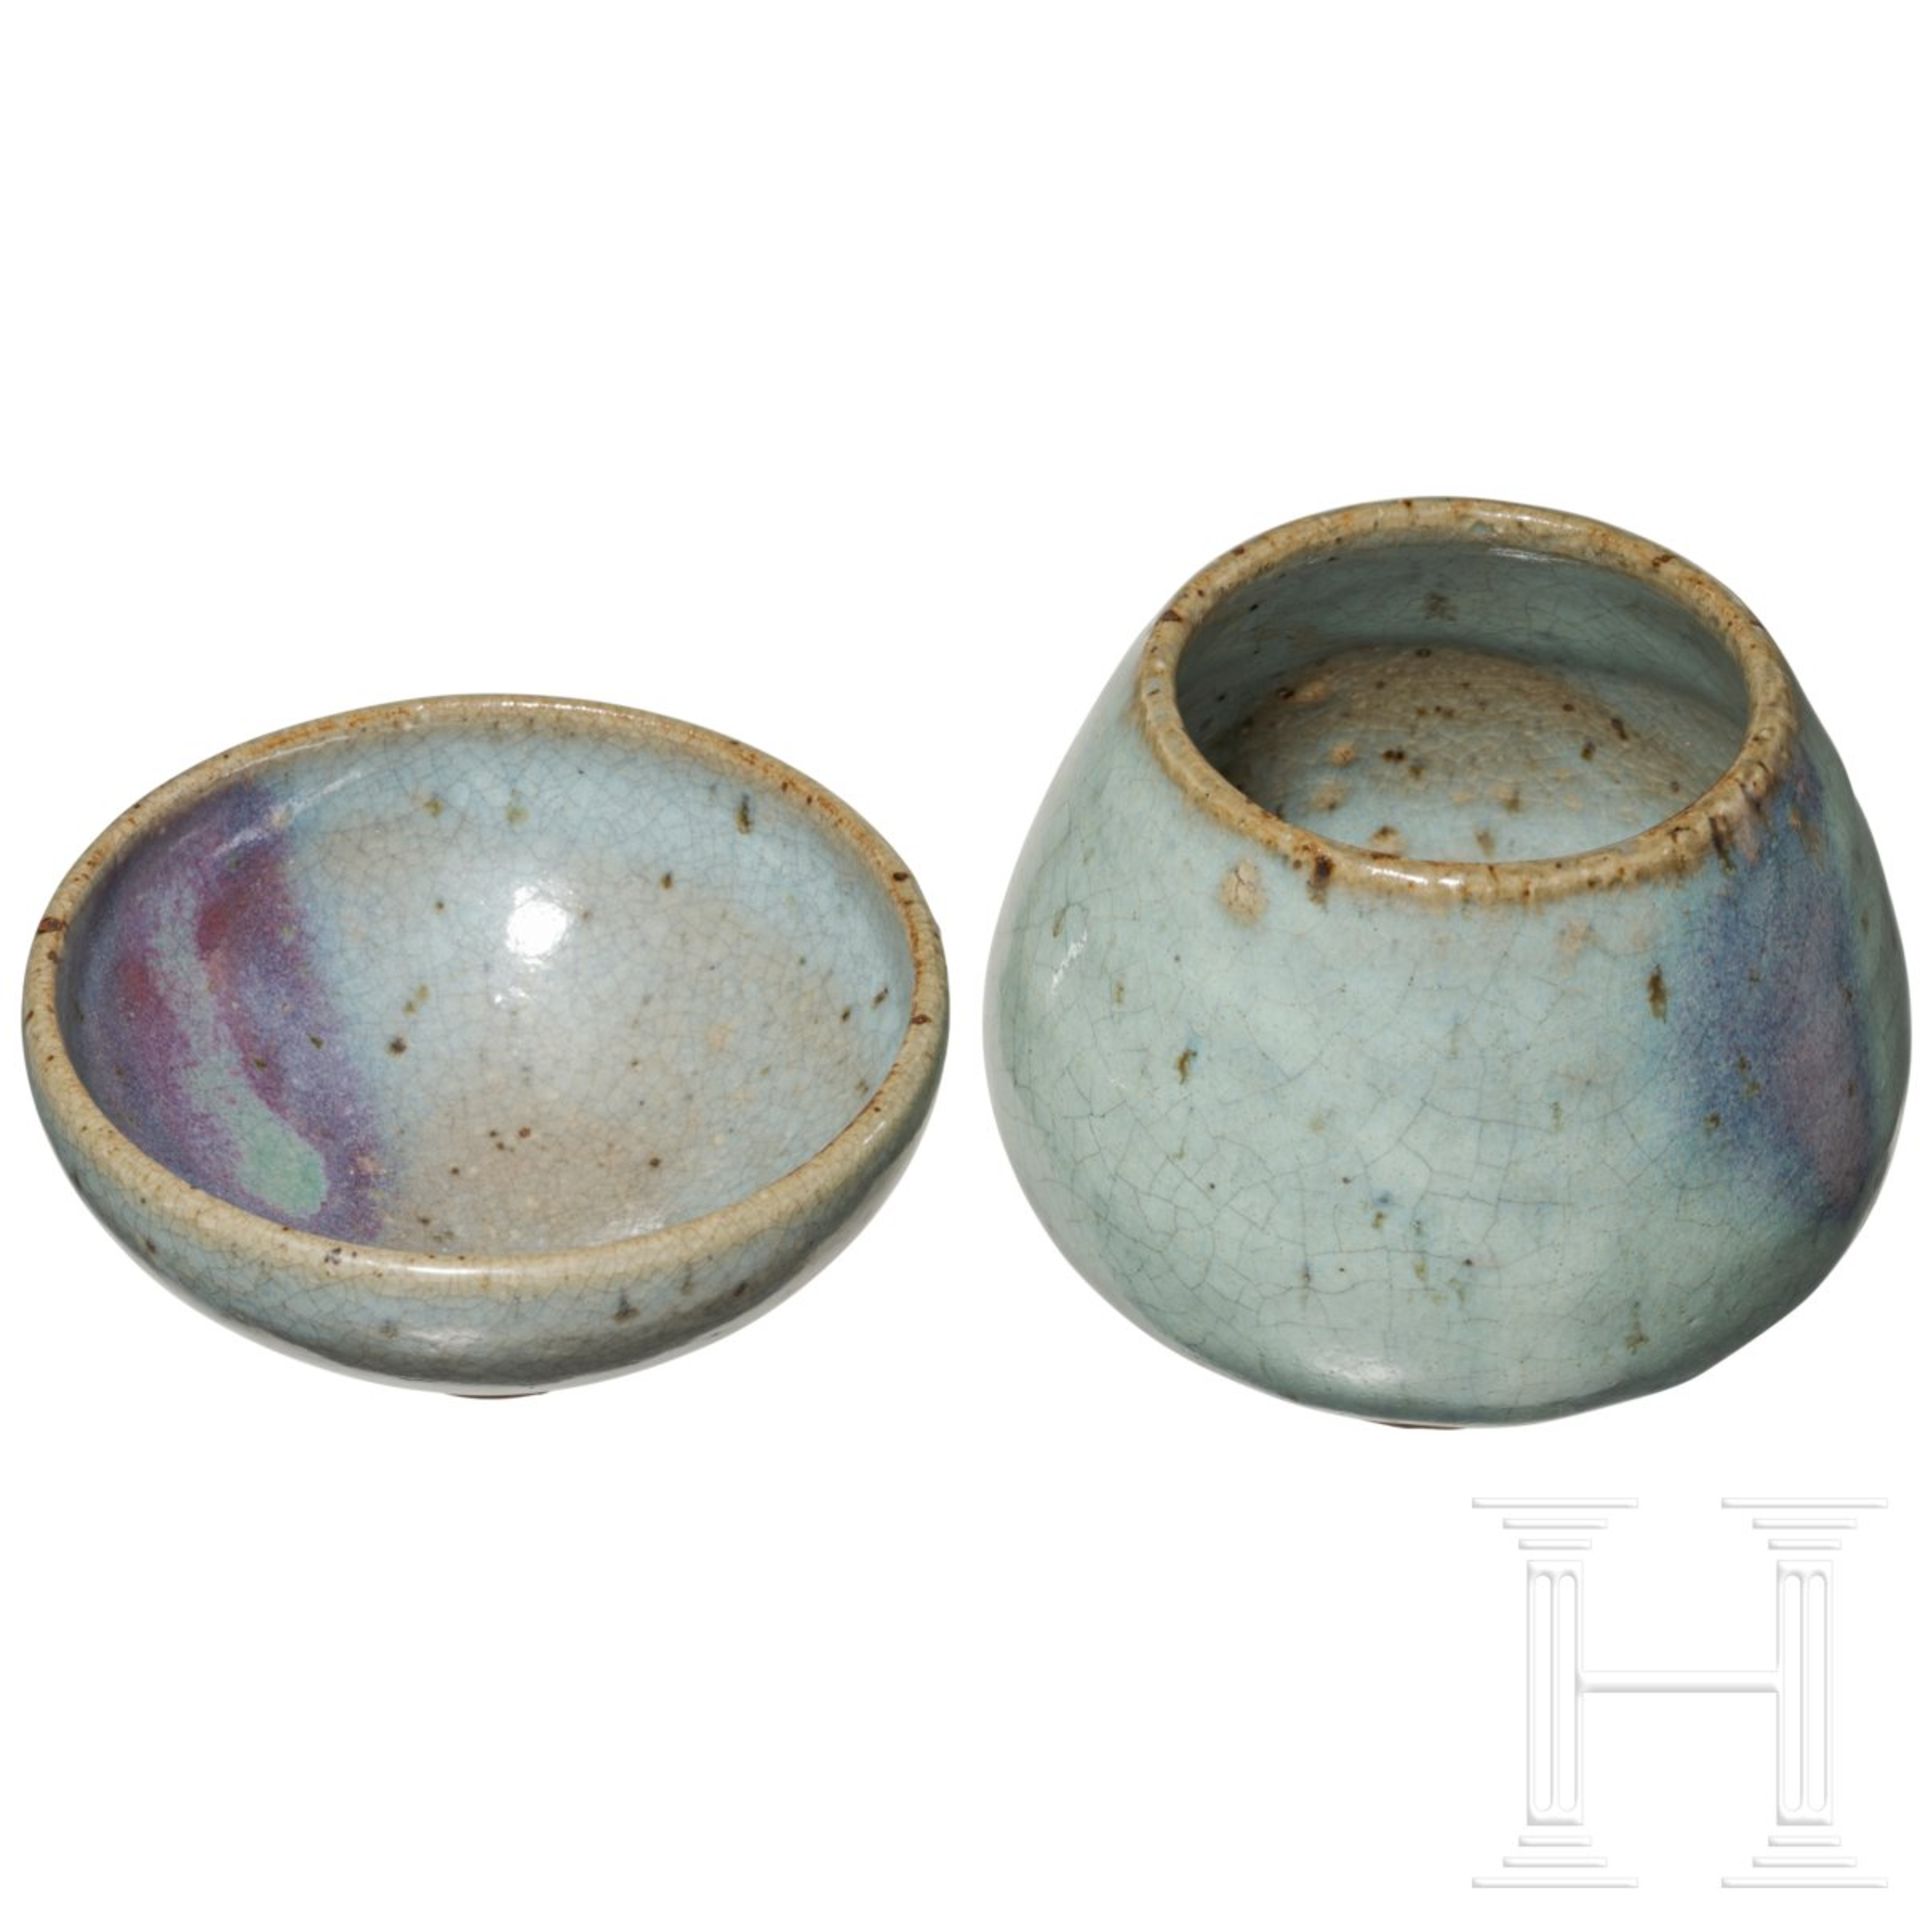 Teeschale und Vase, China, 12. - 13. Jhdt. - Bild 3 aus 5